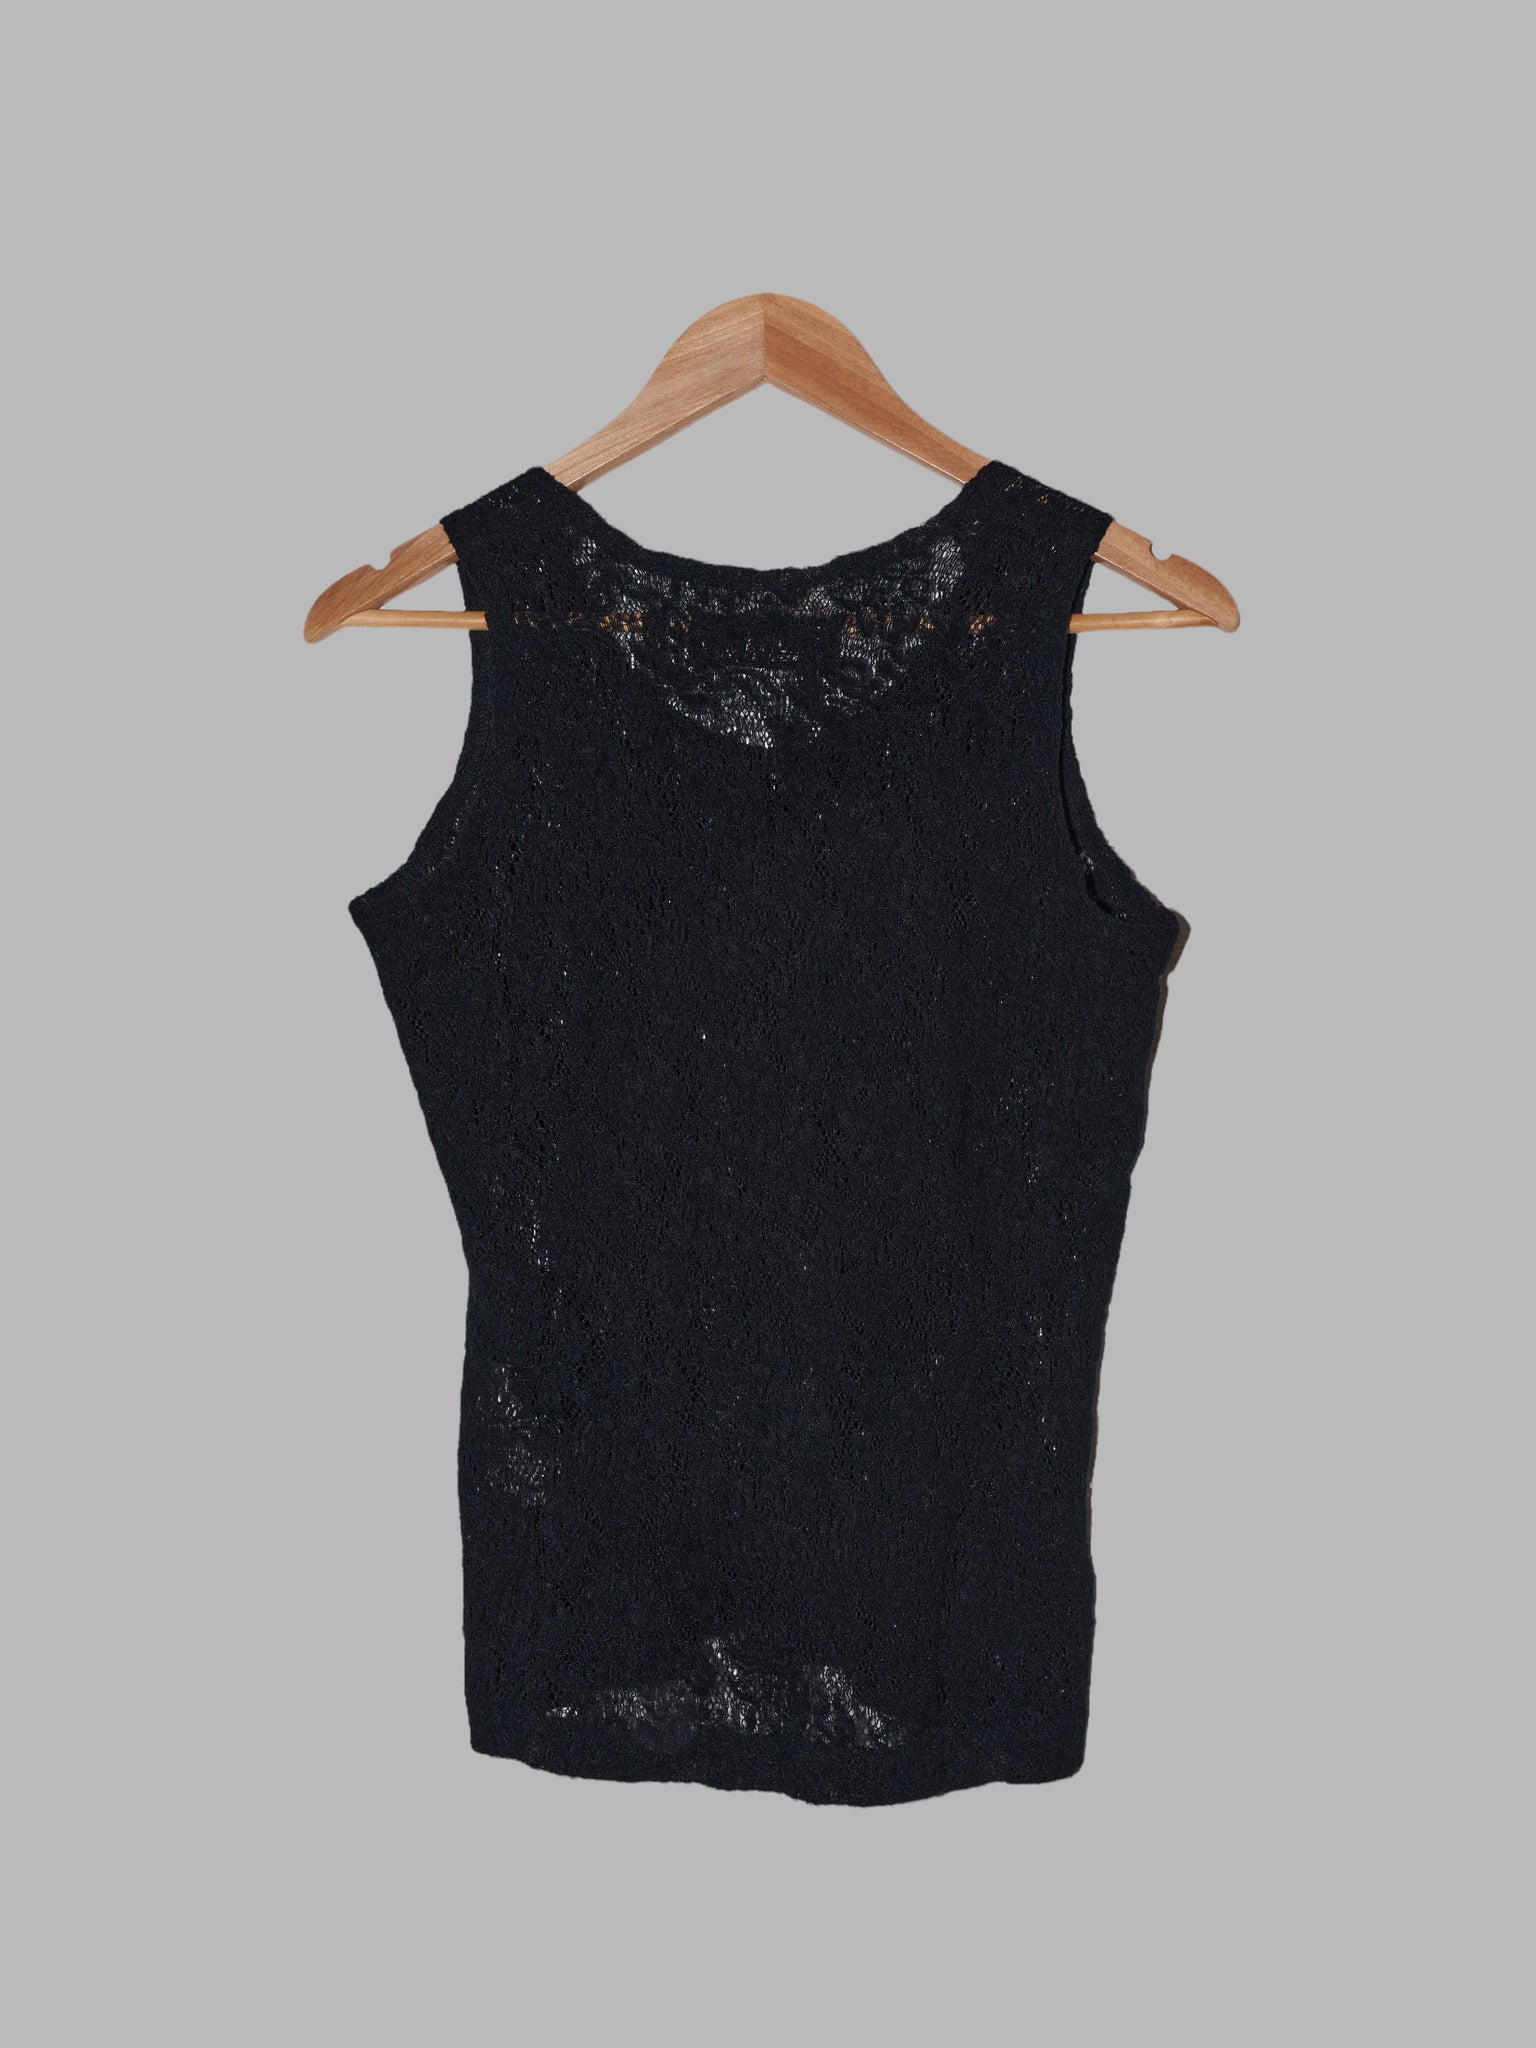 Tricot Comme des Garcons 1980s black wool blend lace singlet